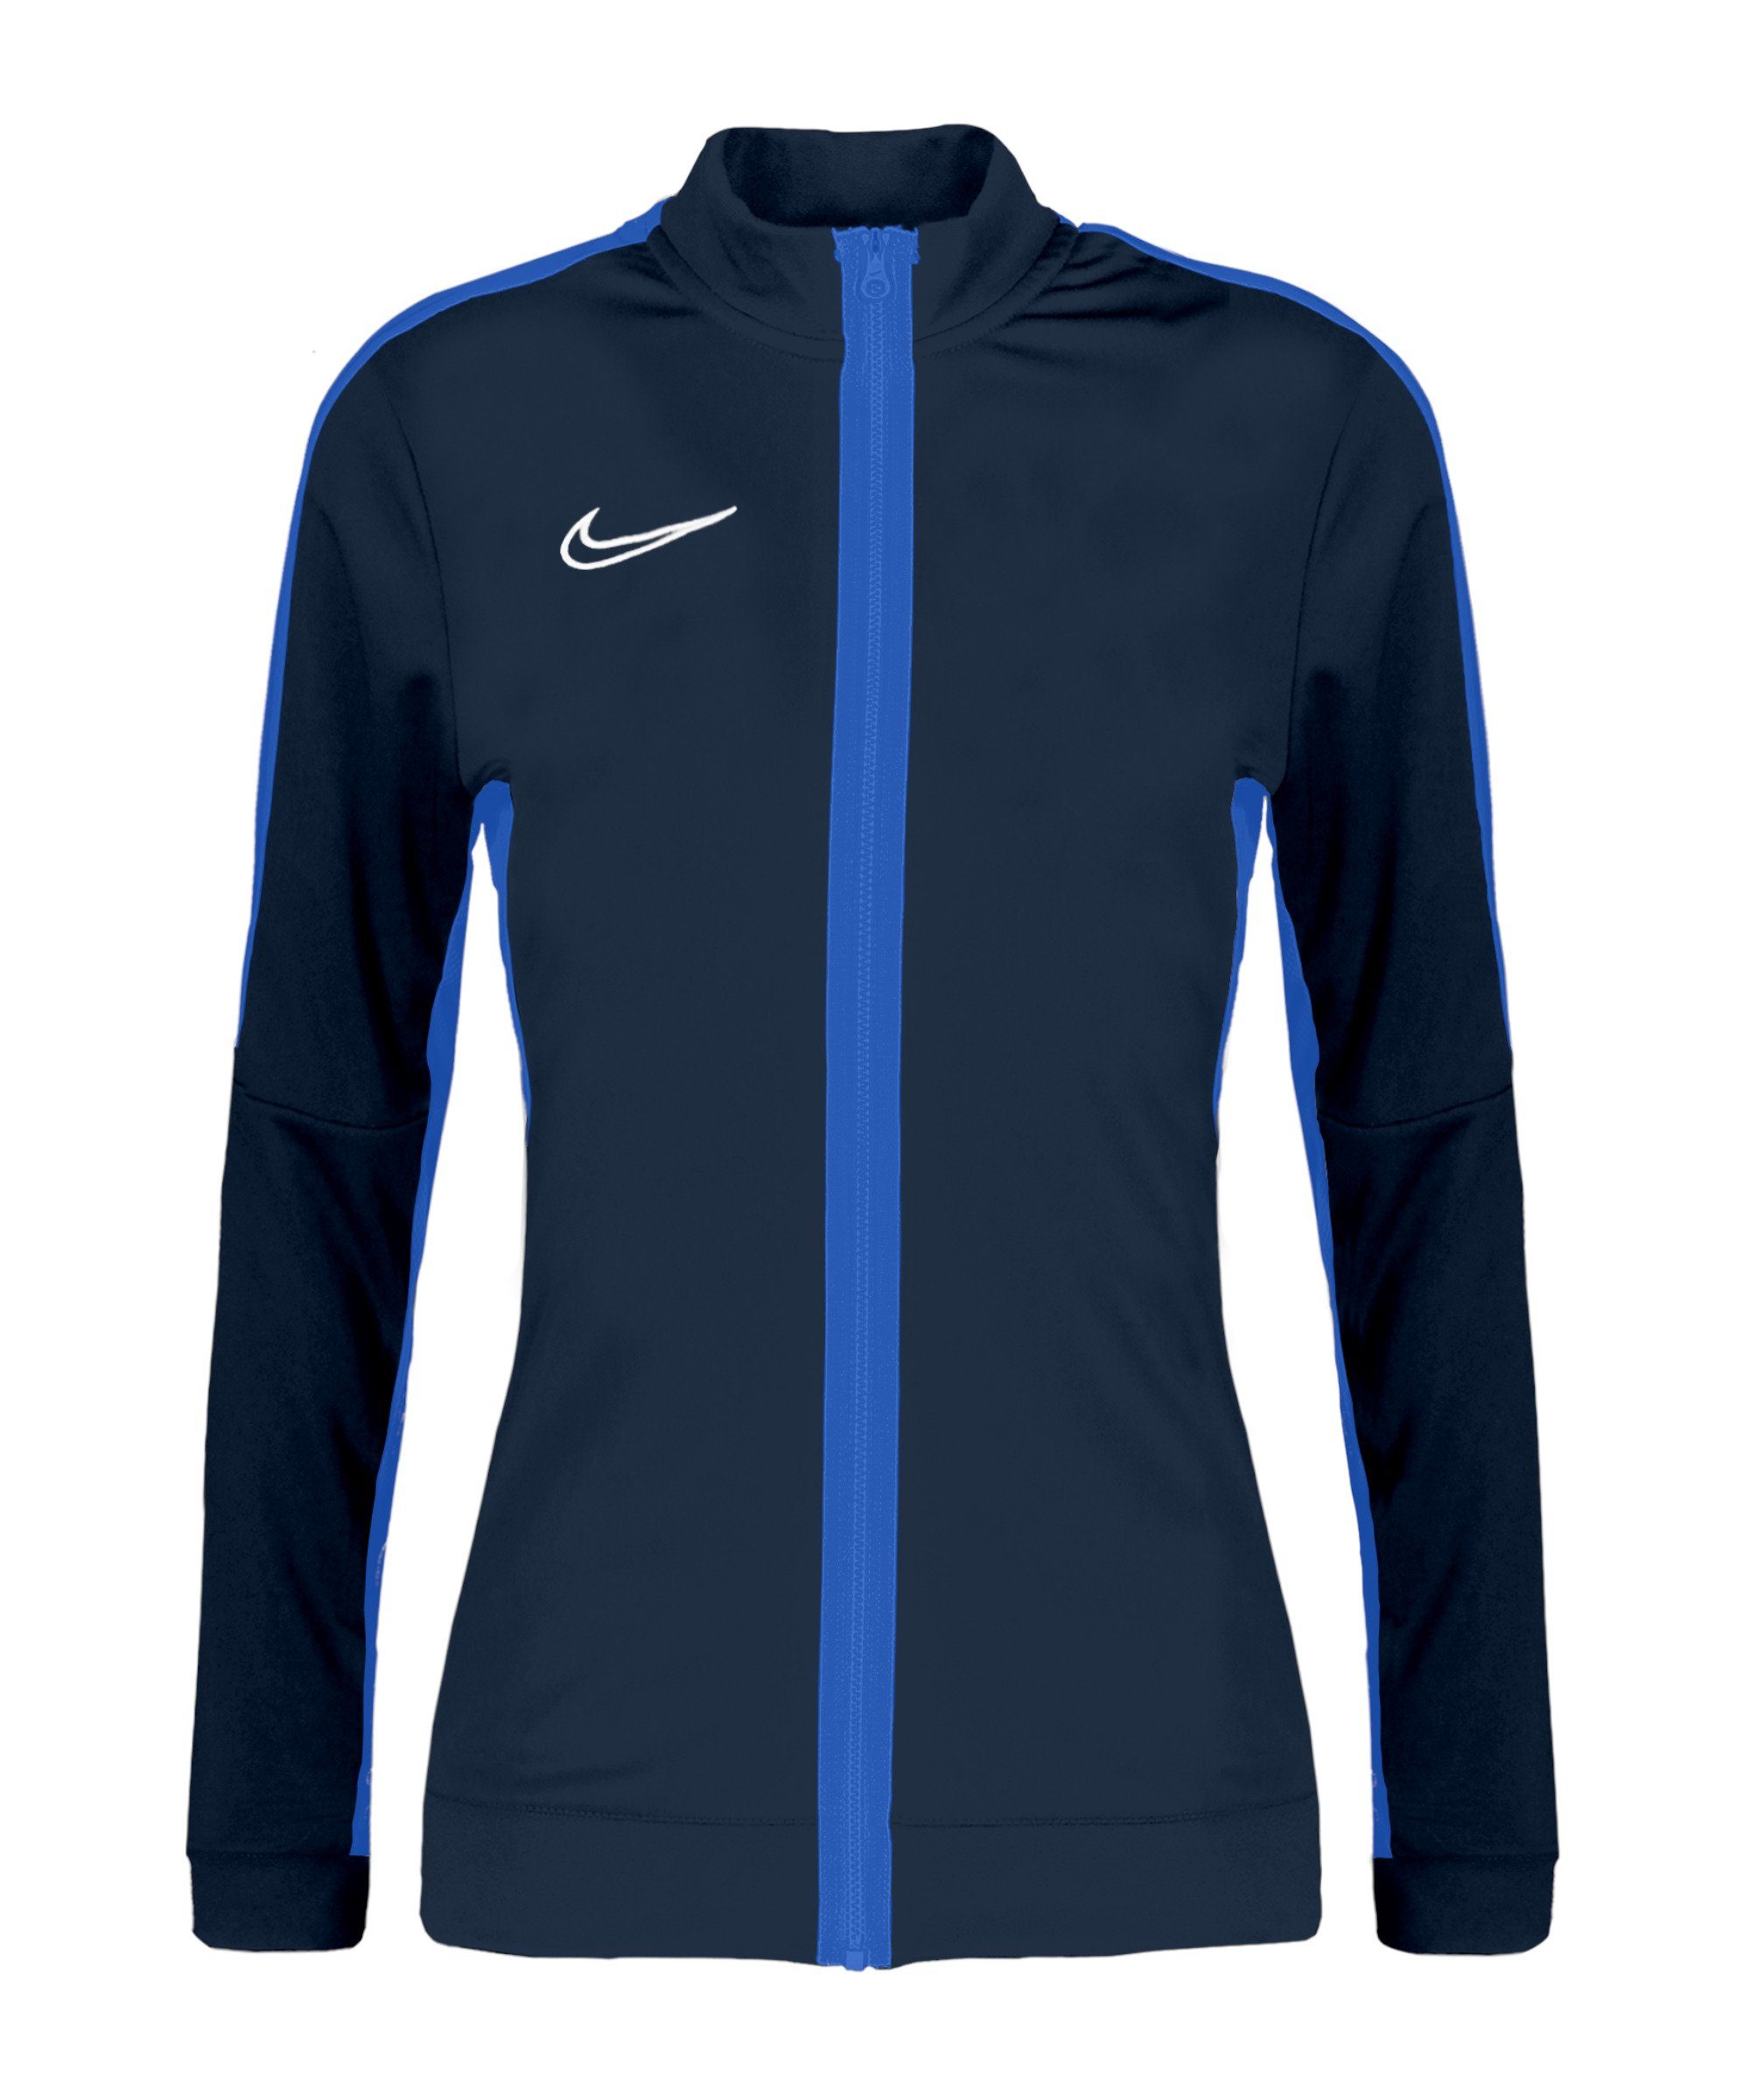 Academy blaublauweiss Trainingsjacke Nike Damen 23 Trainingsjacke